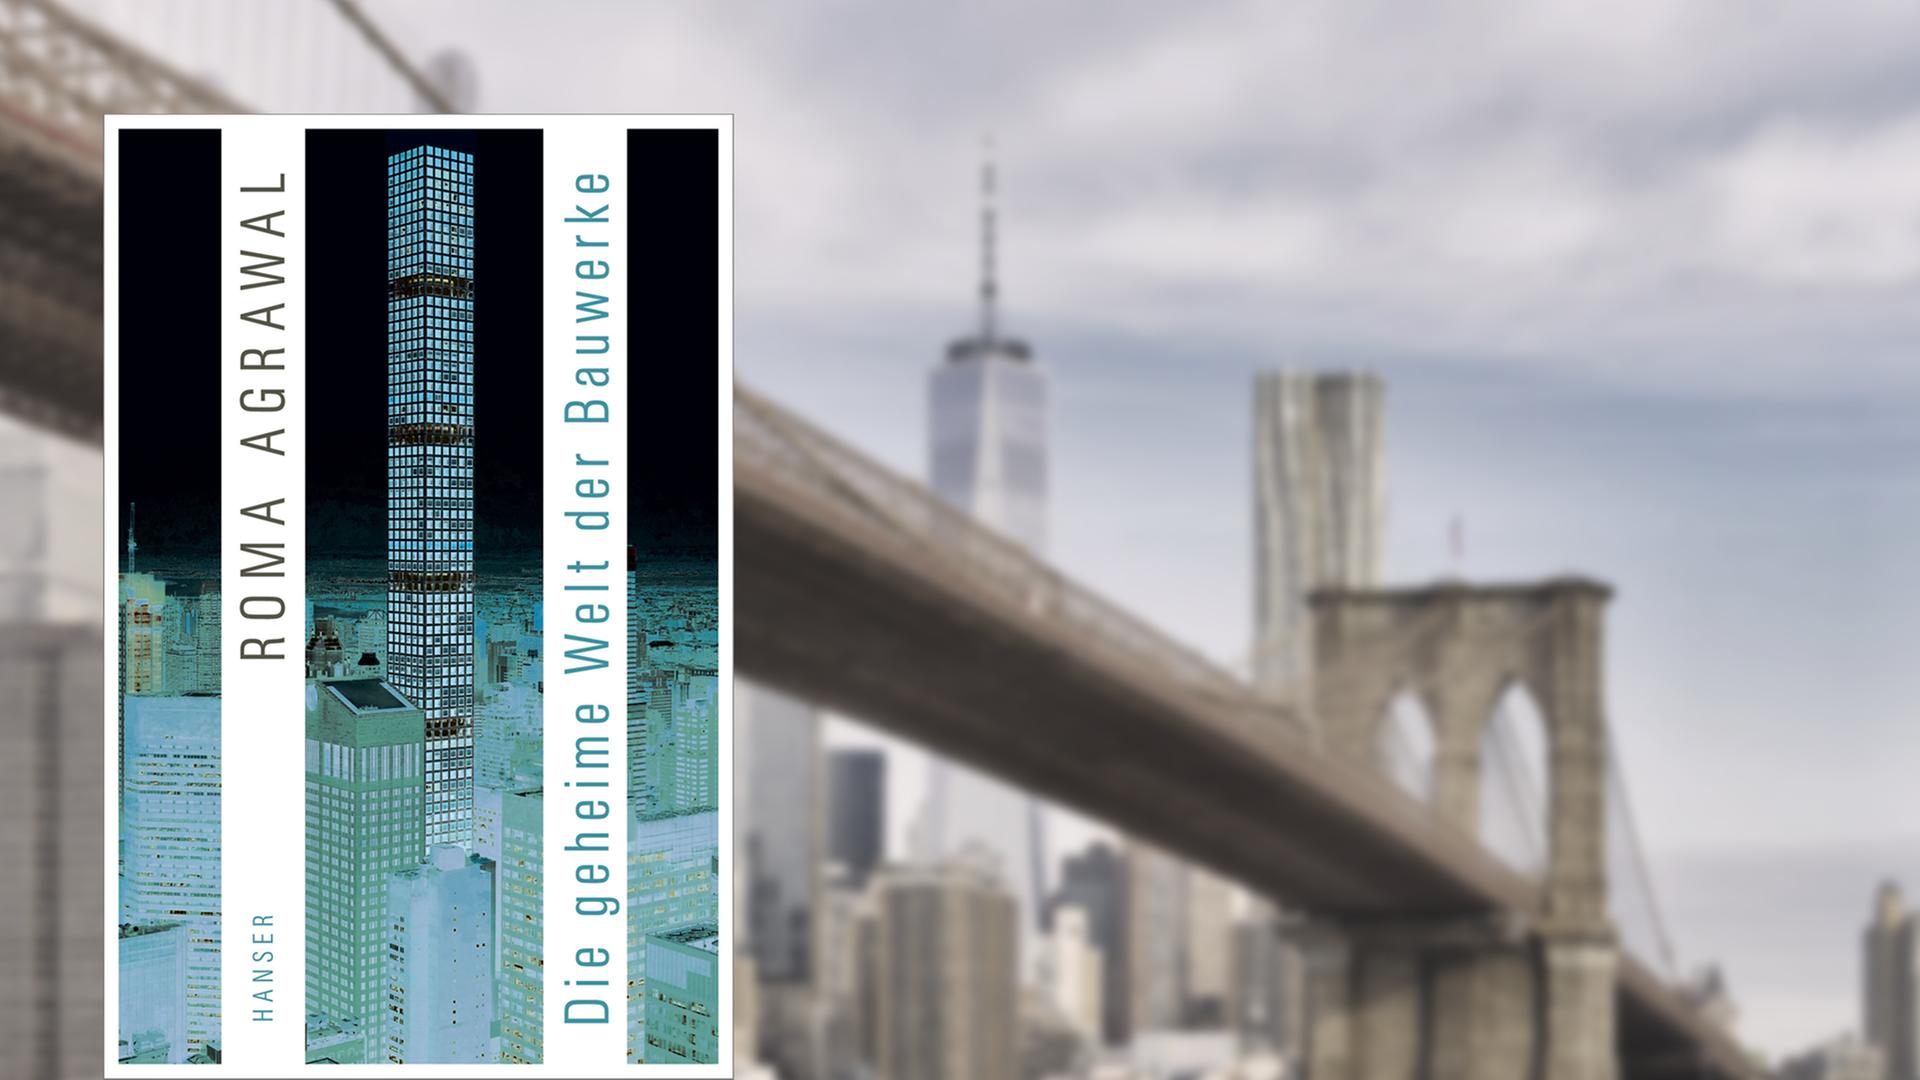 Buchcover "Die geheime Welt der Bauwerke" von Roma Agrawal, im Hintergrund die Brooklyn Bridge vor der Skyline von Manhattan